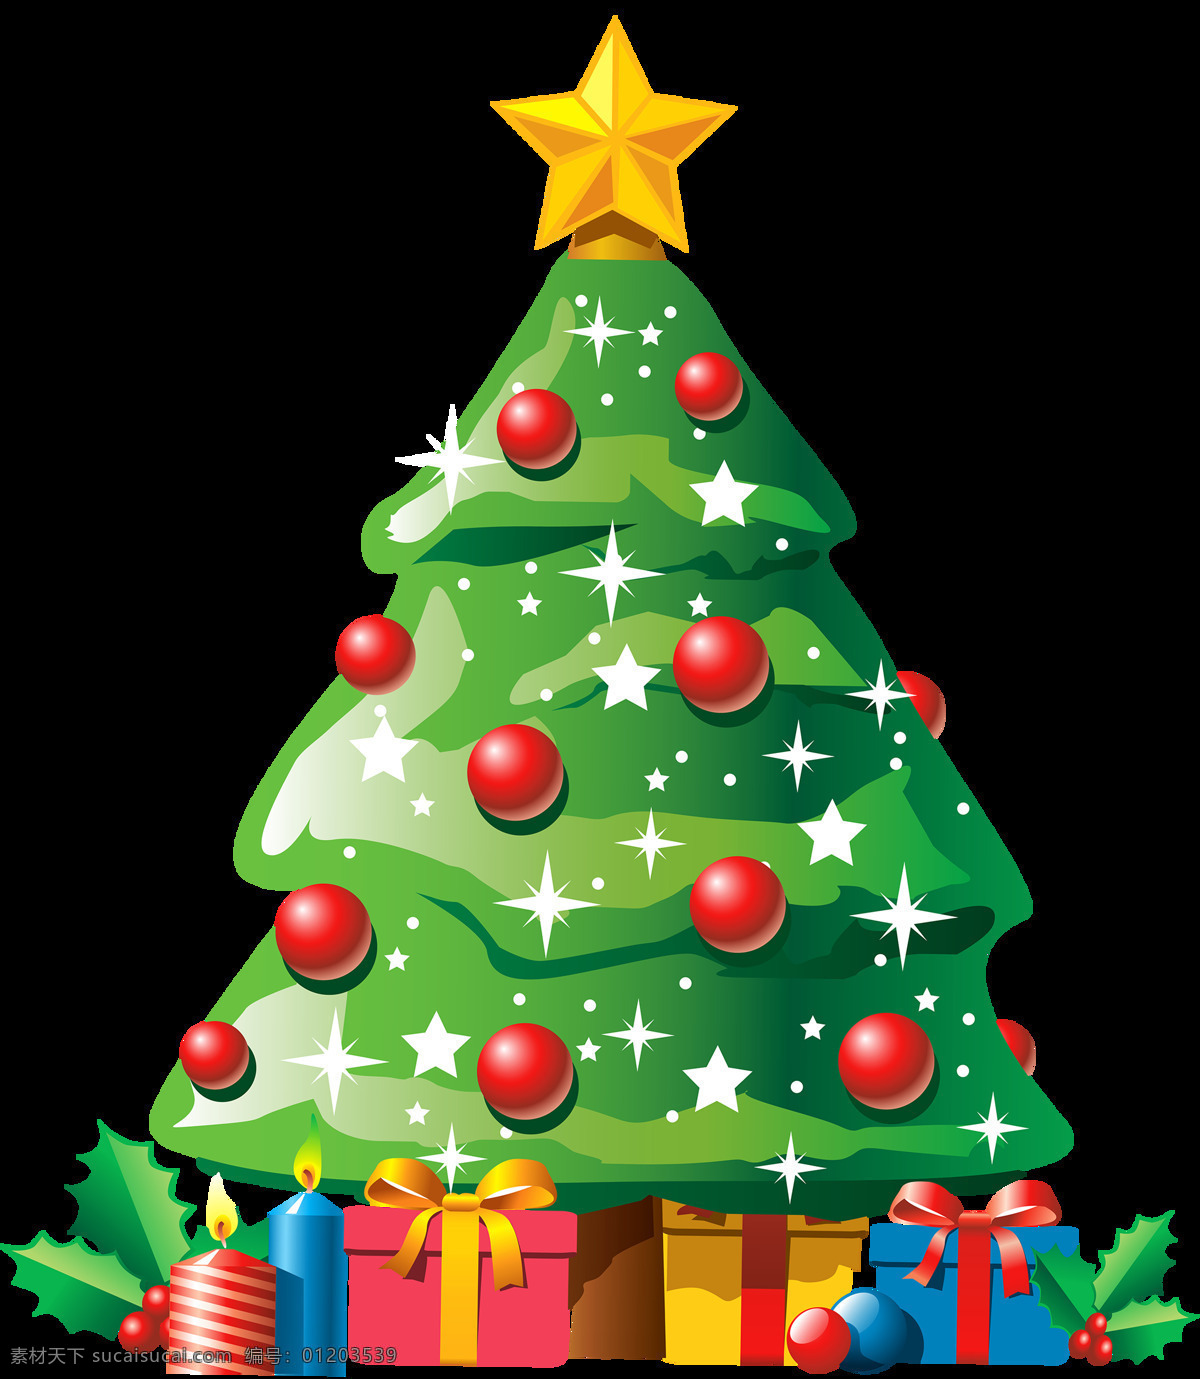 可爱 卡通 圣诞树 元素 装饰 树木 节日 绿色素材 节日素材 圣诞节 动态 圣诞节图片